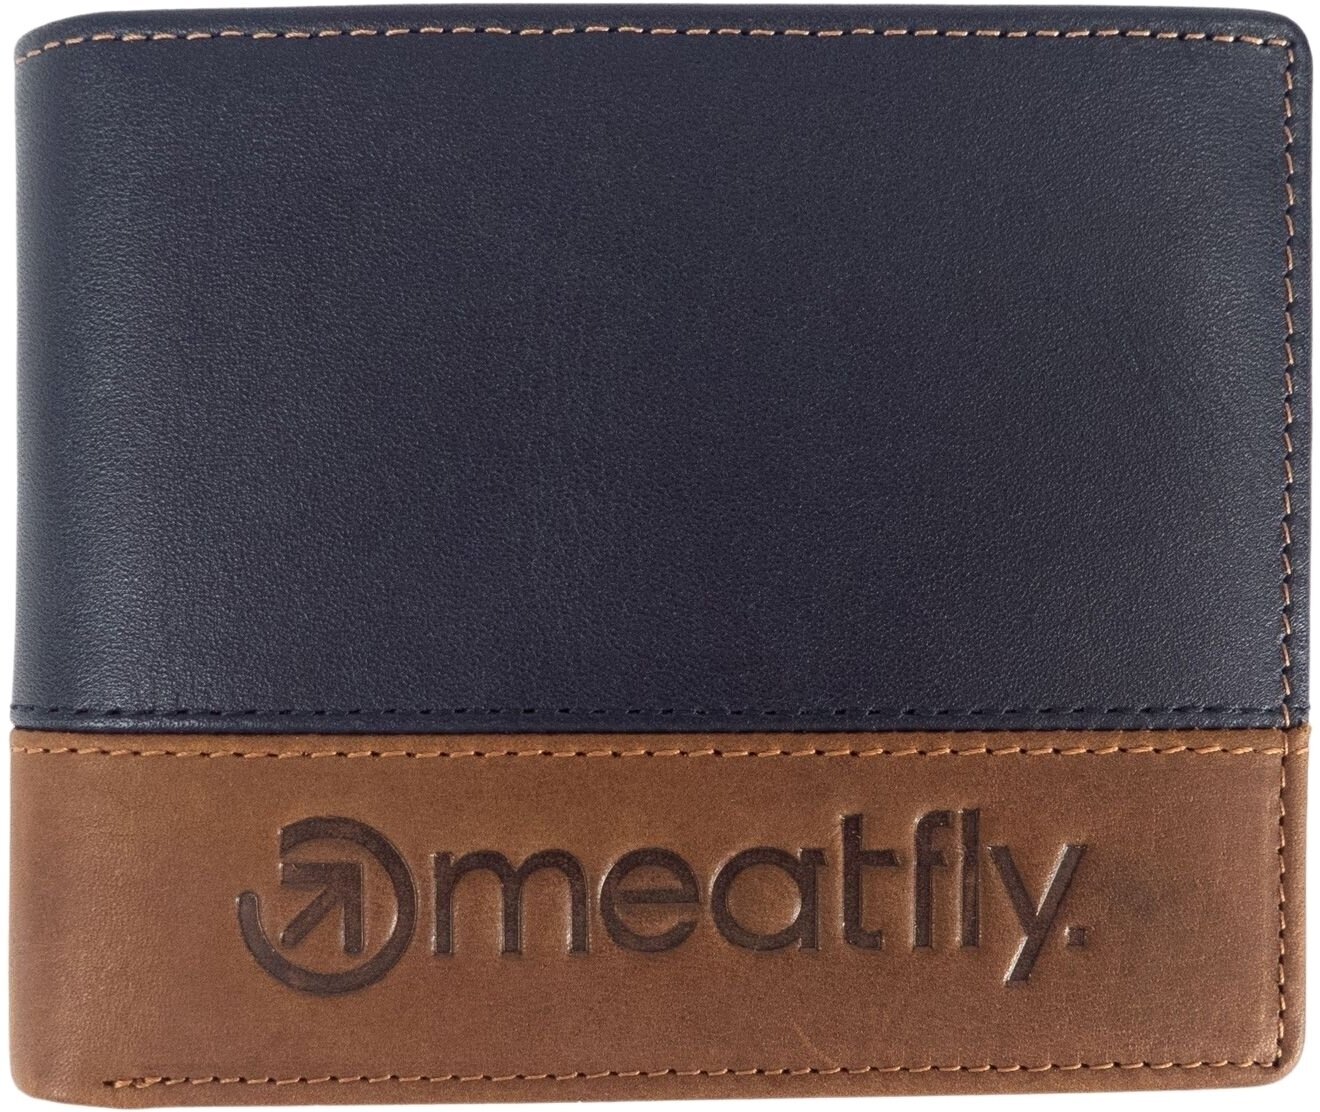 Pénztárca, crossbody táska Meatfly Eddie Premium Leather Wallet Navy/Brown Pénztárca